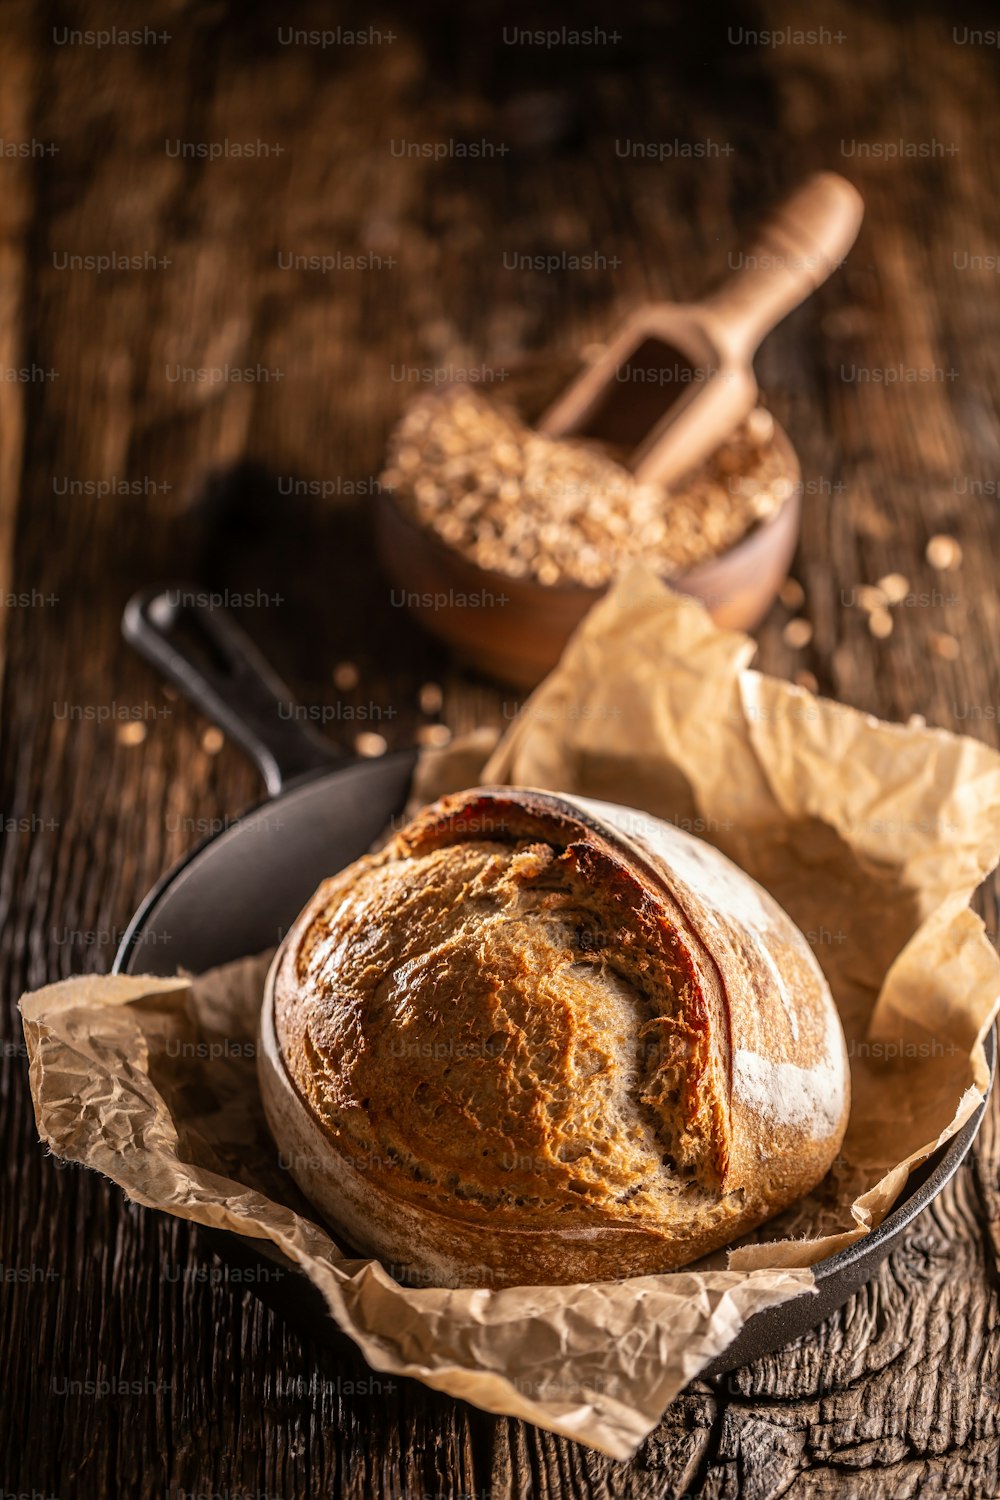 Pan de levadura rústico crujiente recién horneado que yace sobre el papel de hornear en la sartén de aleación, cuenco de madera lleno de granos de trigo, cuchara de madera cosida profundamente.